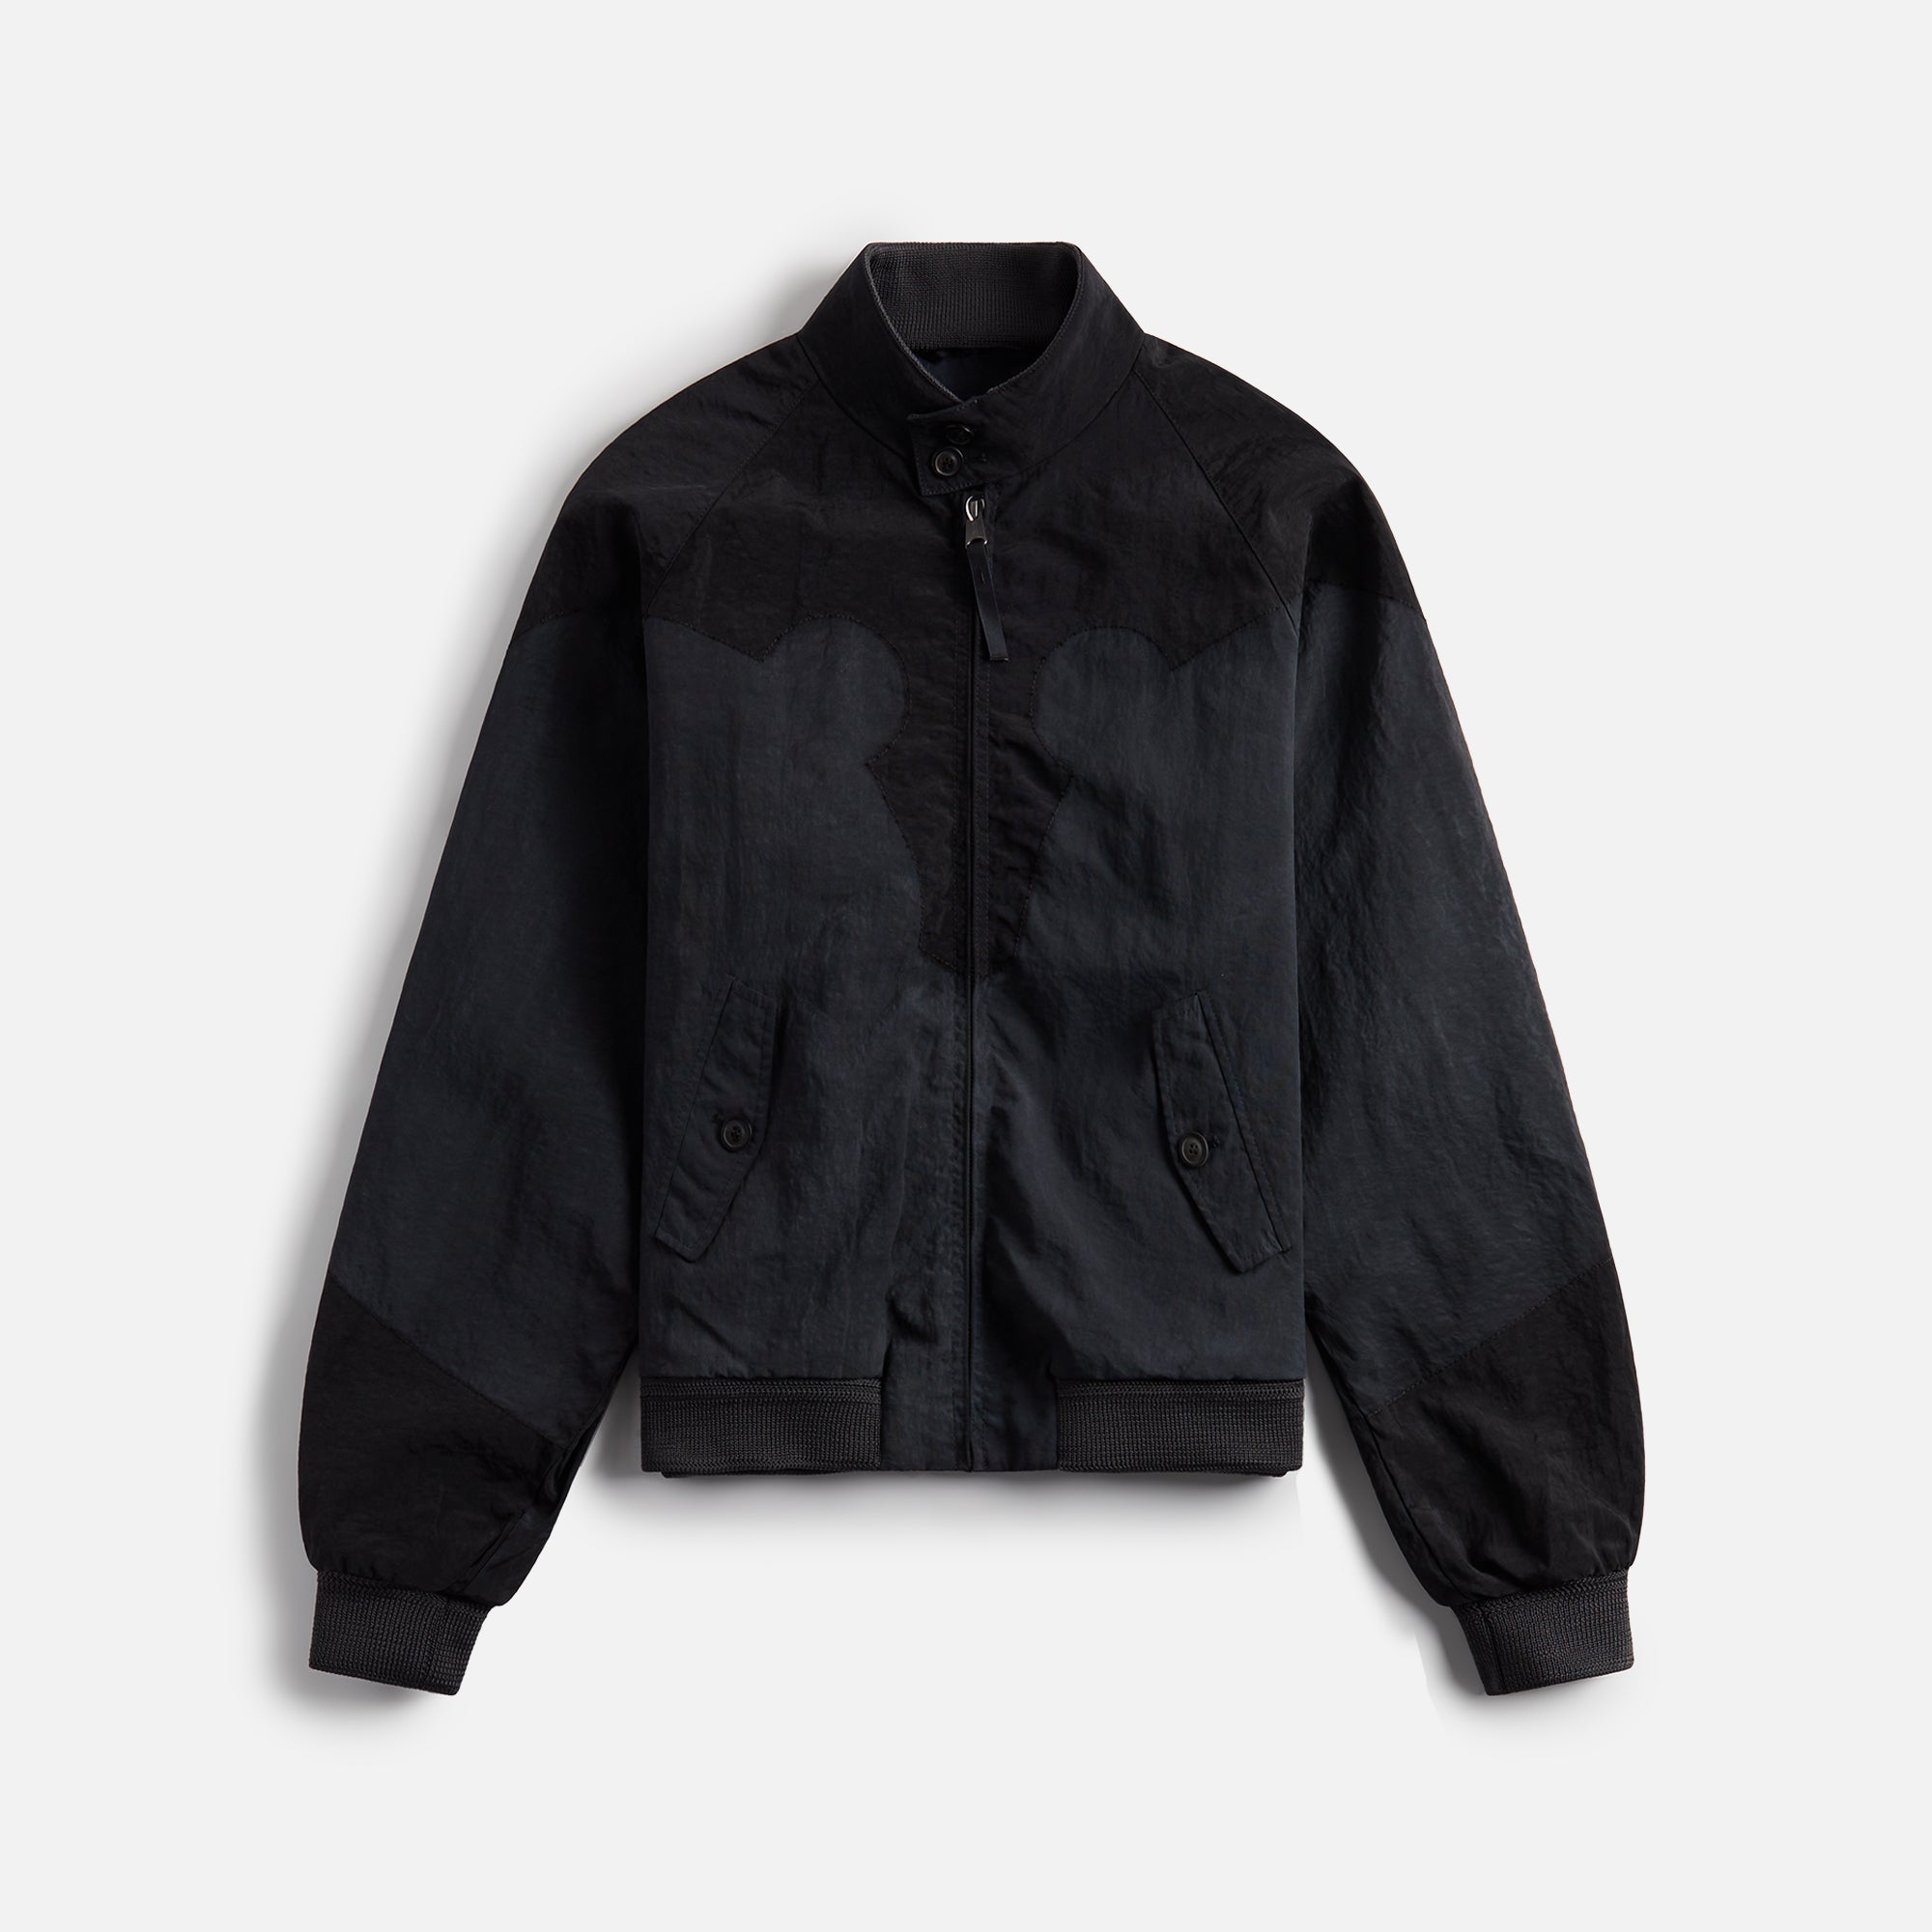 Maison Margiela Sports Jacket - Charcoal – Kith